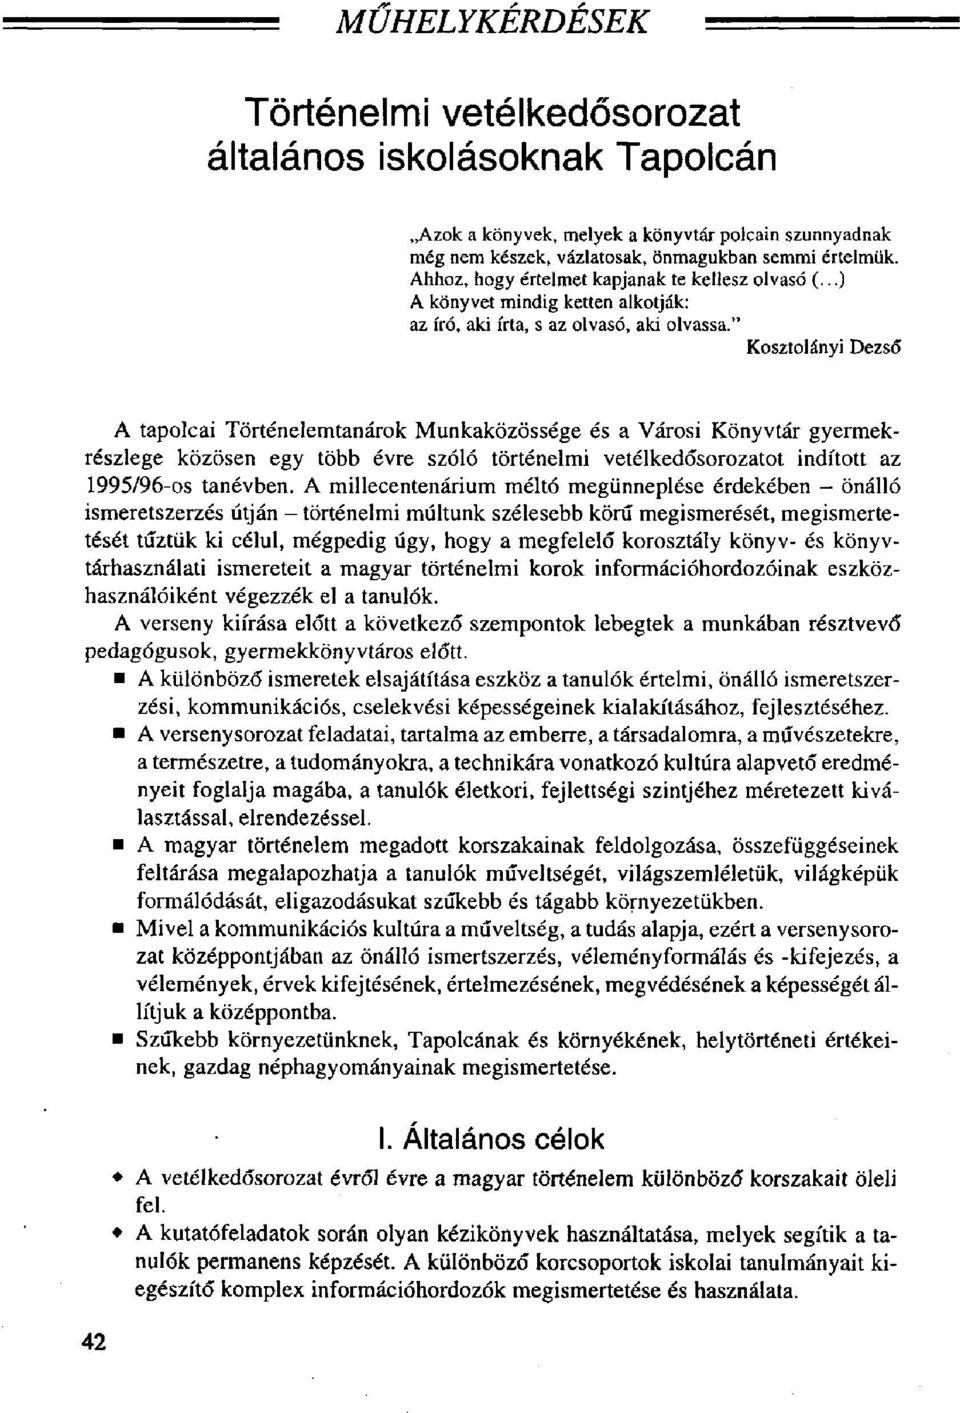 " Kosztolányi Dezső A tapolcai Történelemtanárok Munkaközössége és a Városi Könyvtár gyermekrészlege közösen egy több évre szóló történelmi vetélkedősorozatot indított az 1995/96-os tanévben.